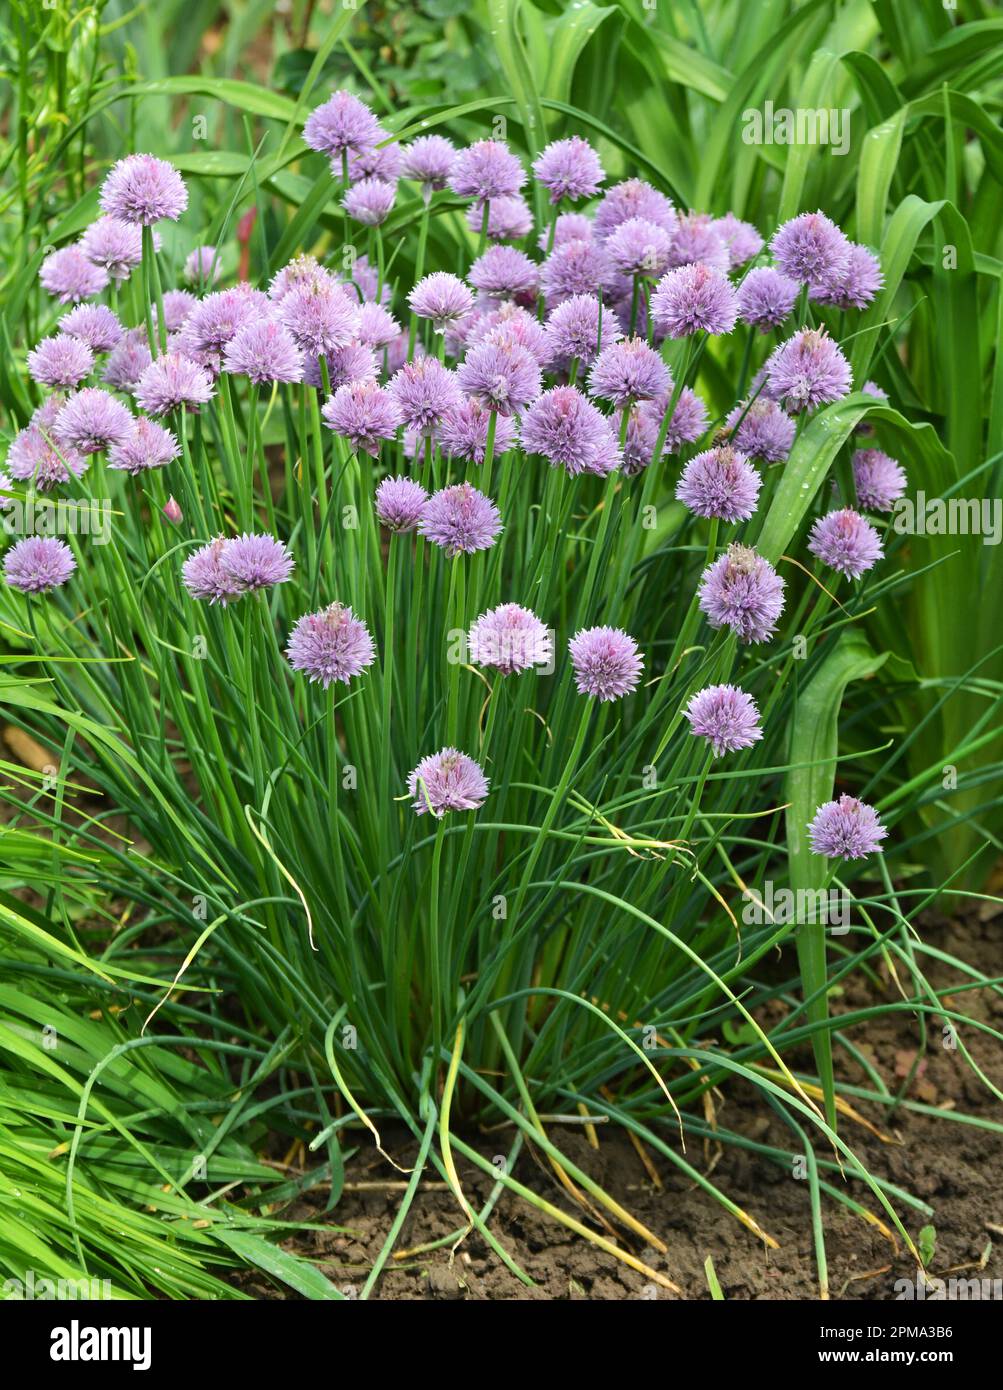 Dekorative Zwiebeln wachsen und blühen auf einem Blumenbeet im Garten Stockfoto